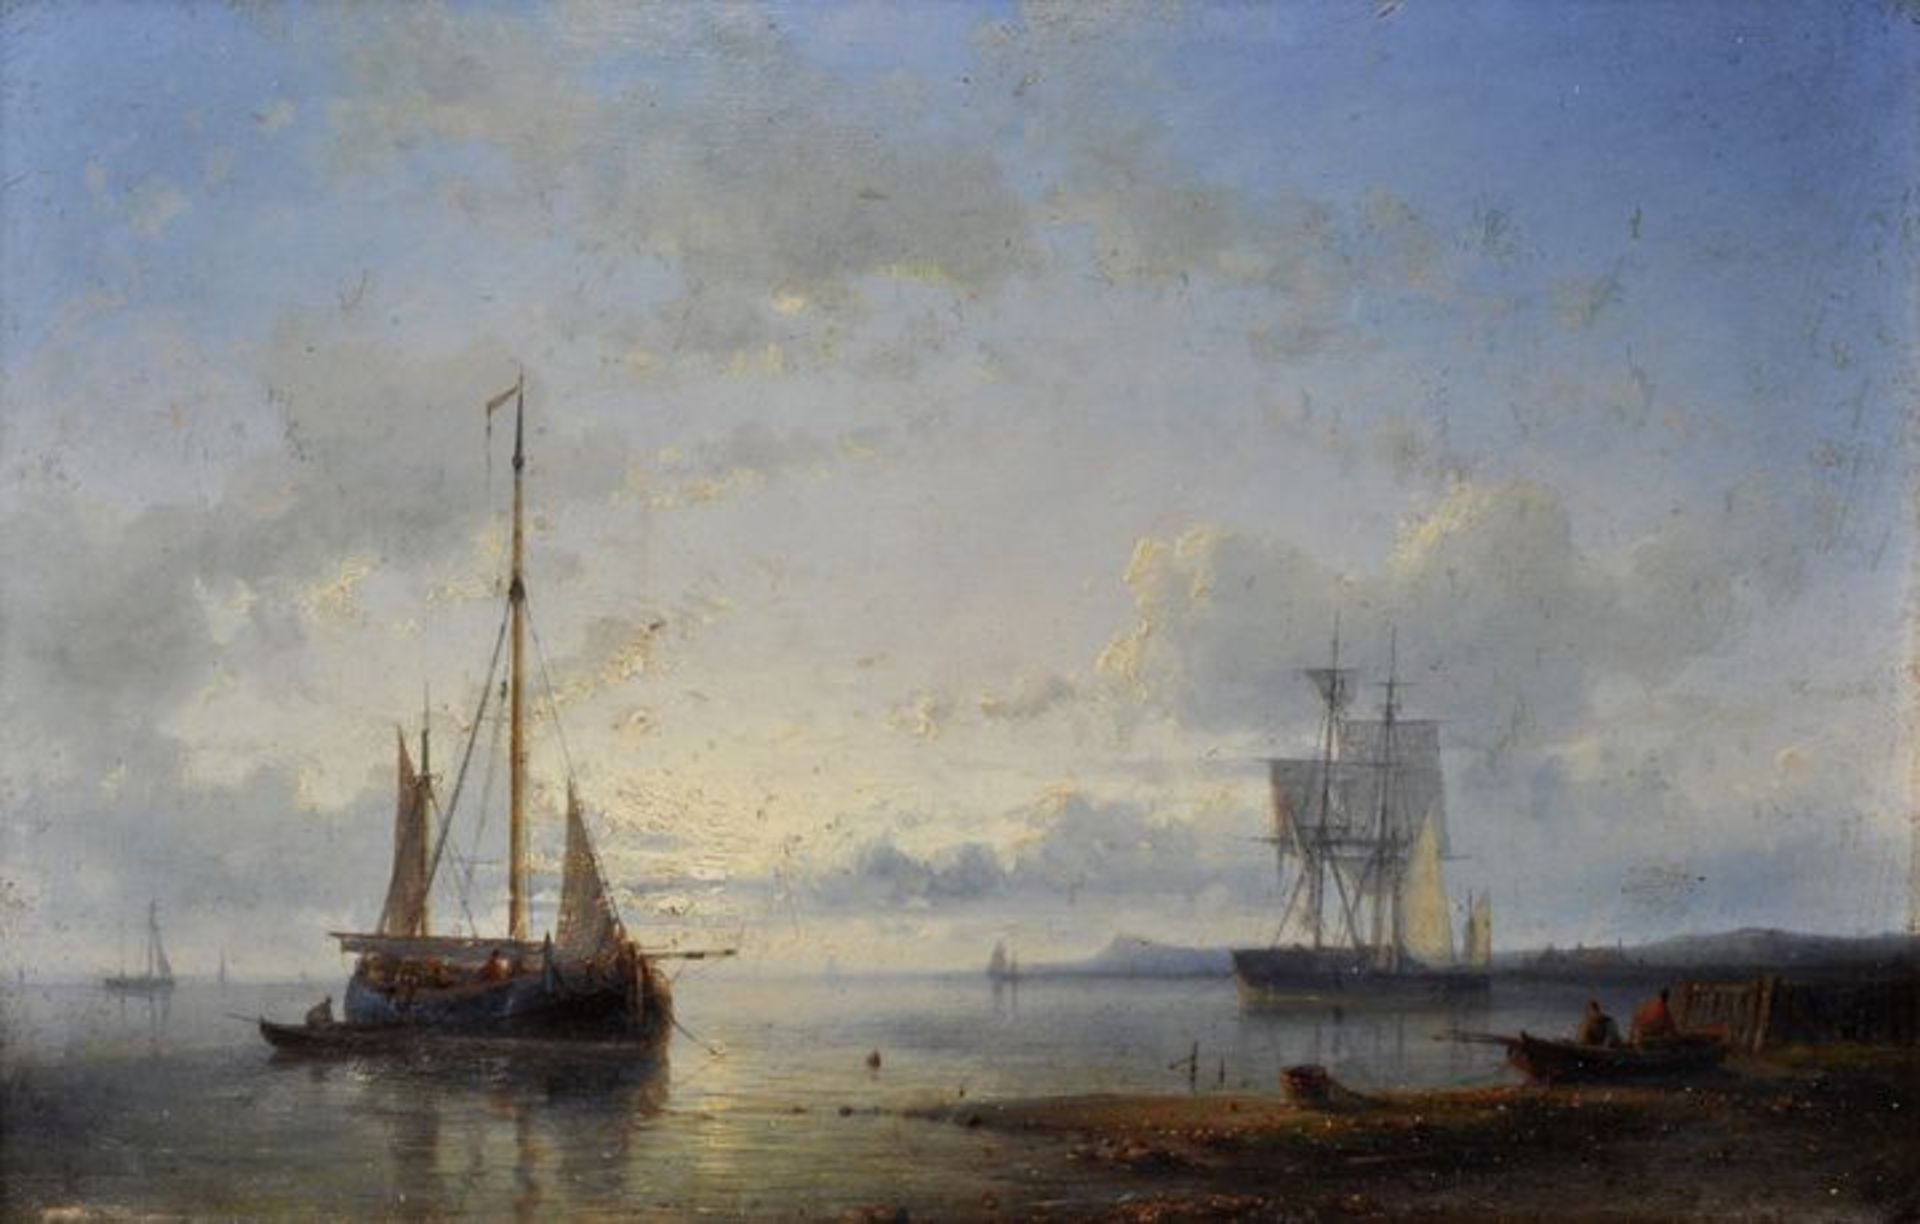 Marinemaler, Mitte/ 2. H. 19. Jh.Bucht mit Segelschiffen bei ruhiger See. Lichtstimmung. Öl auf